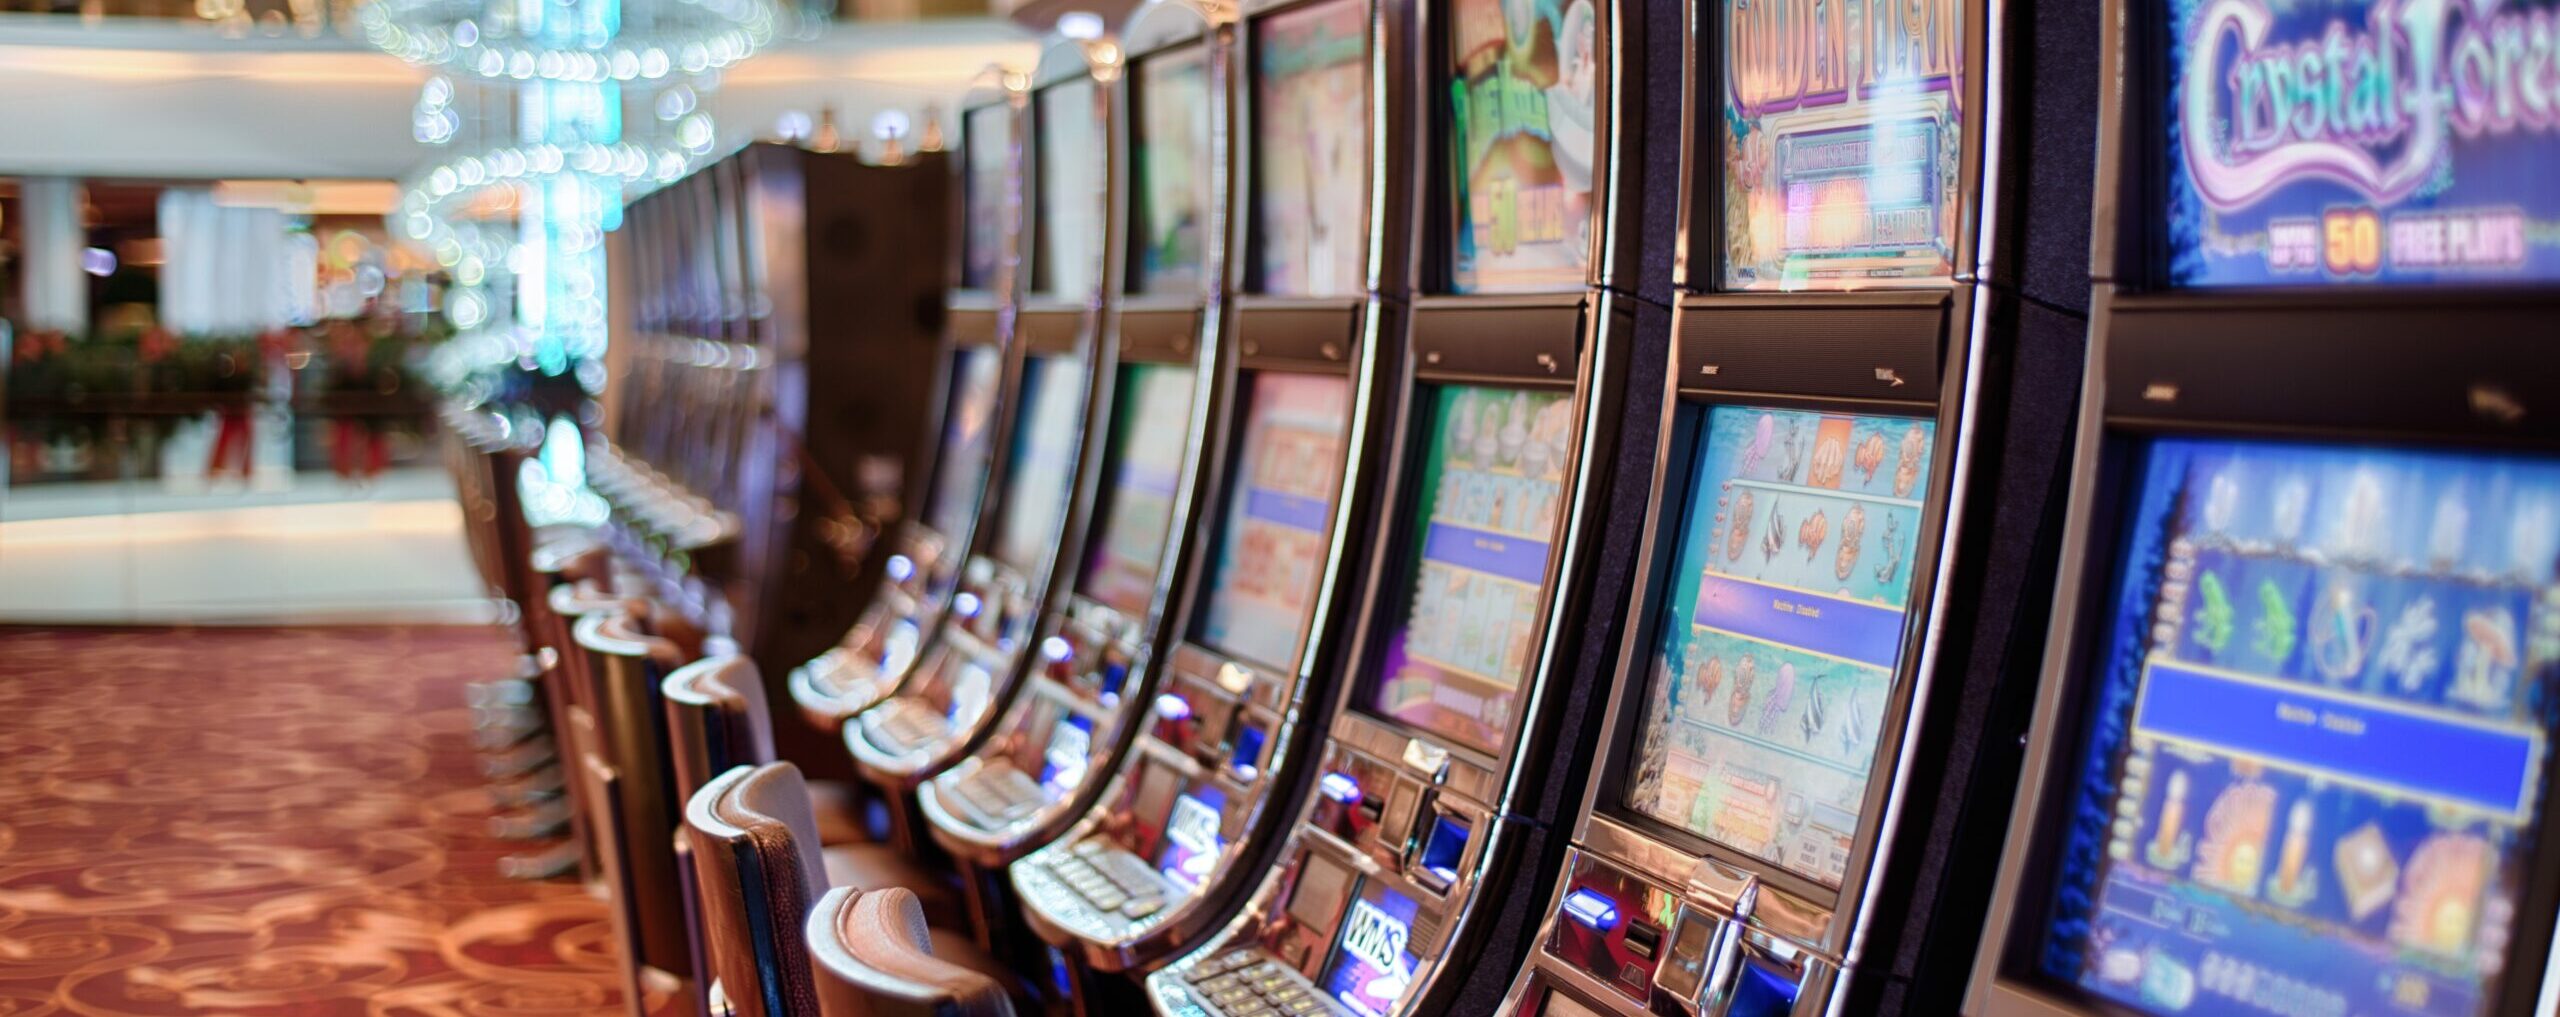 casino gaming slot machines